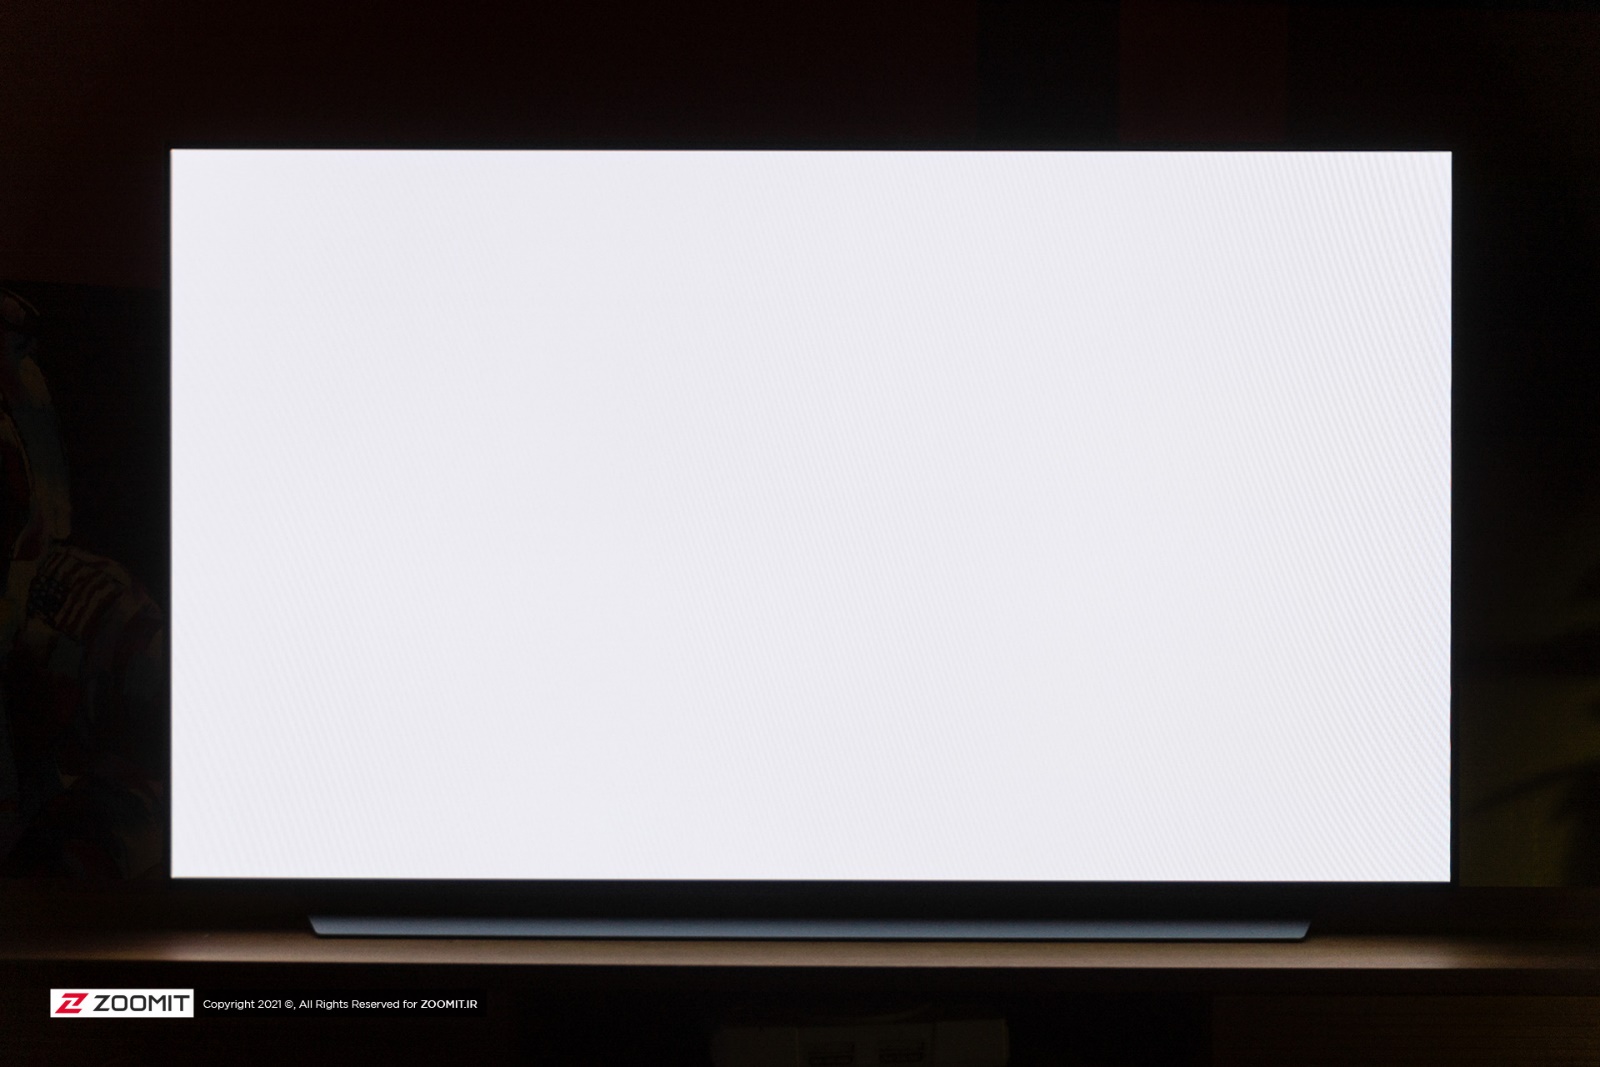 White uniformity on LG C1 OLED TV